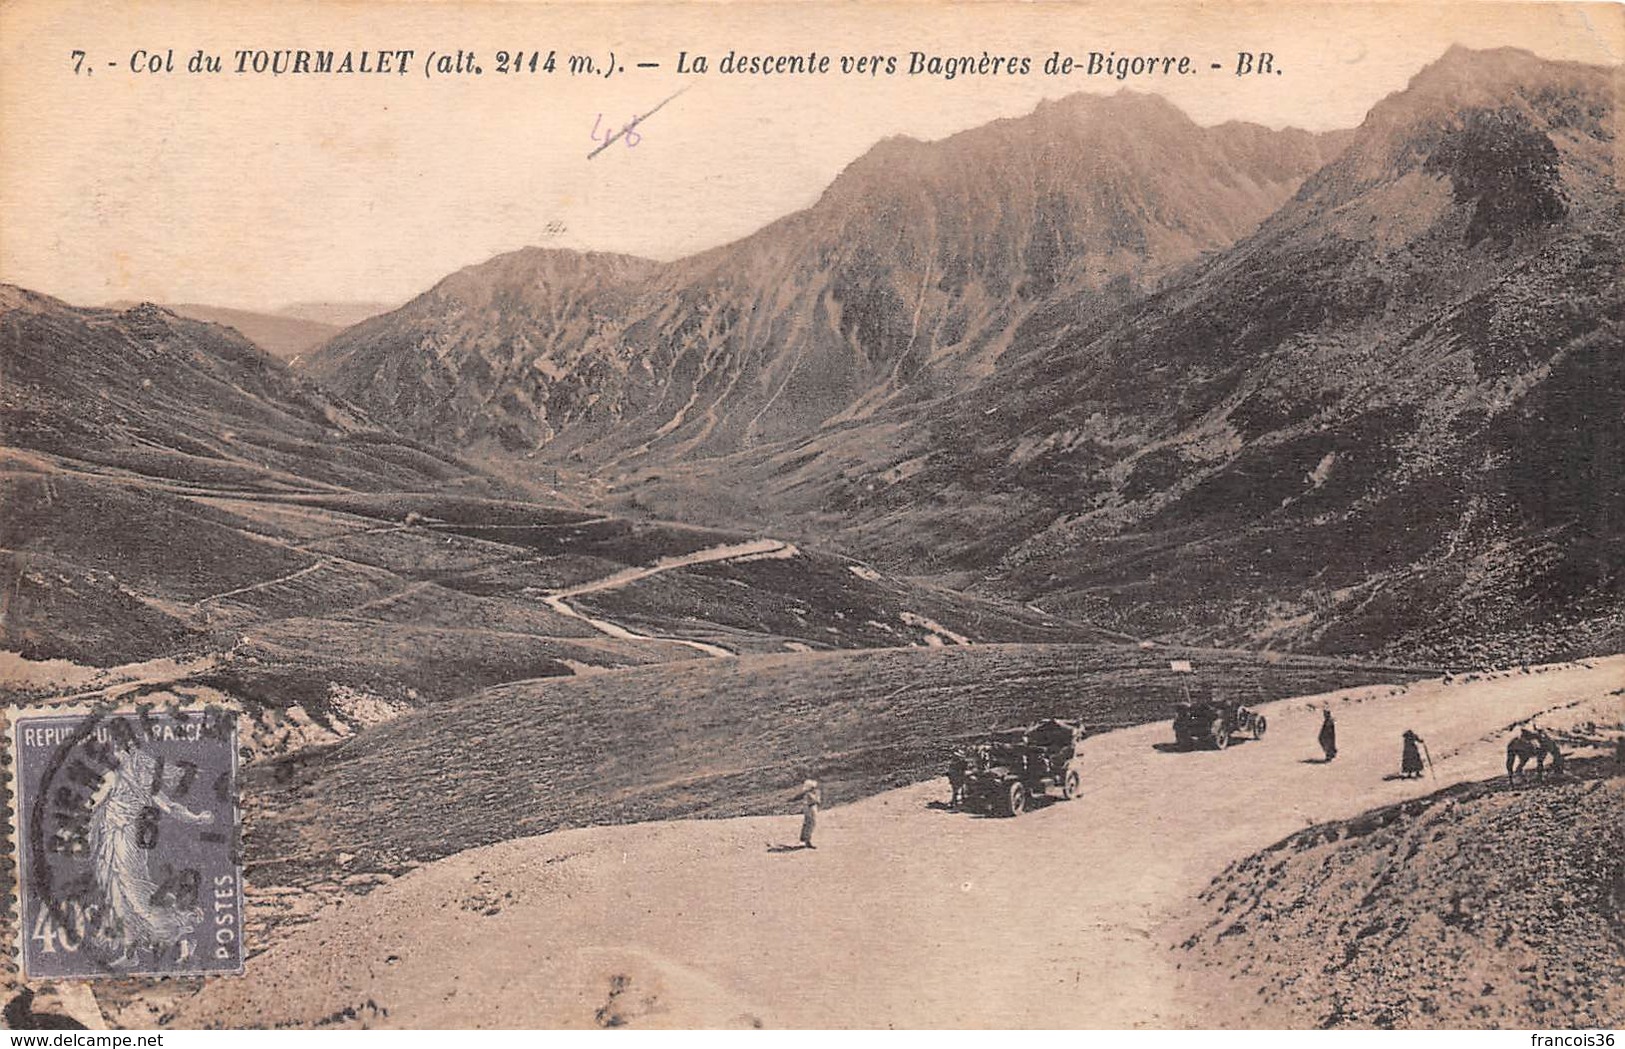 Lot de 51 CPA du Col du Tourmalet près Bagnères de Bigorre (65) - Très bon état